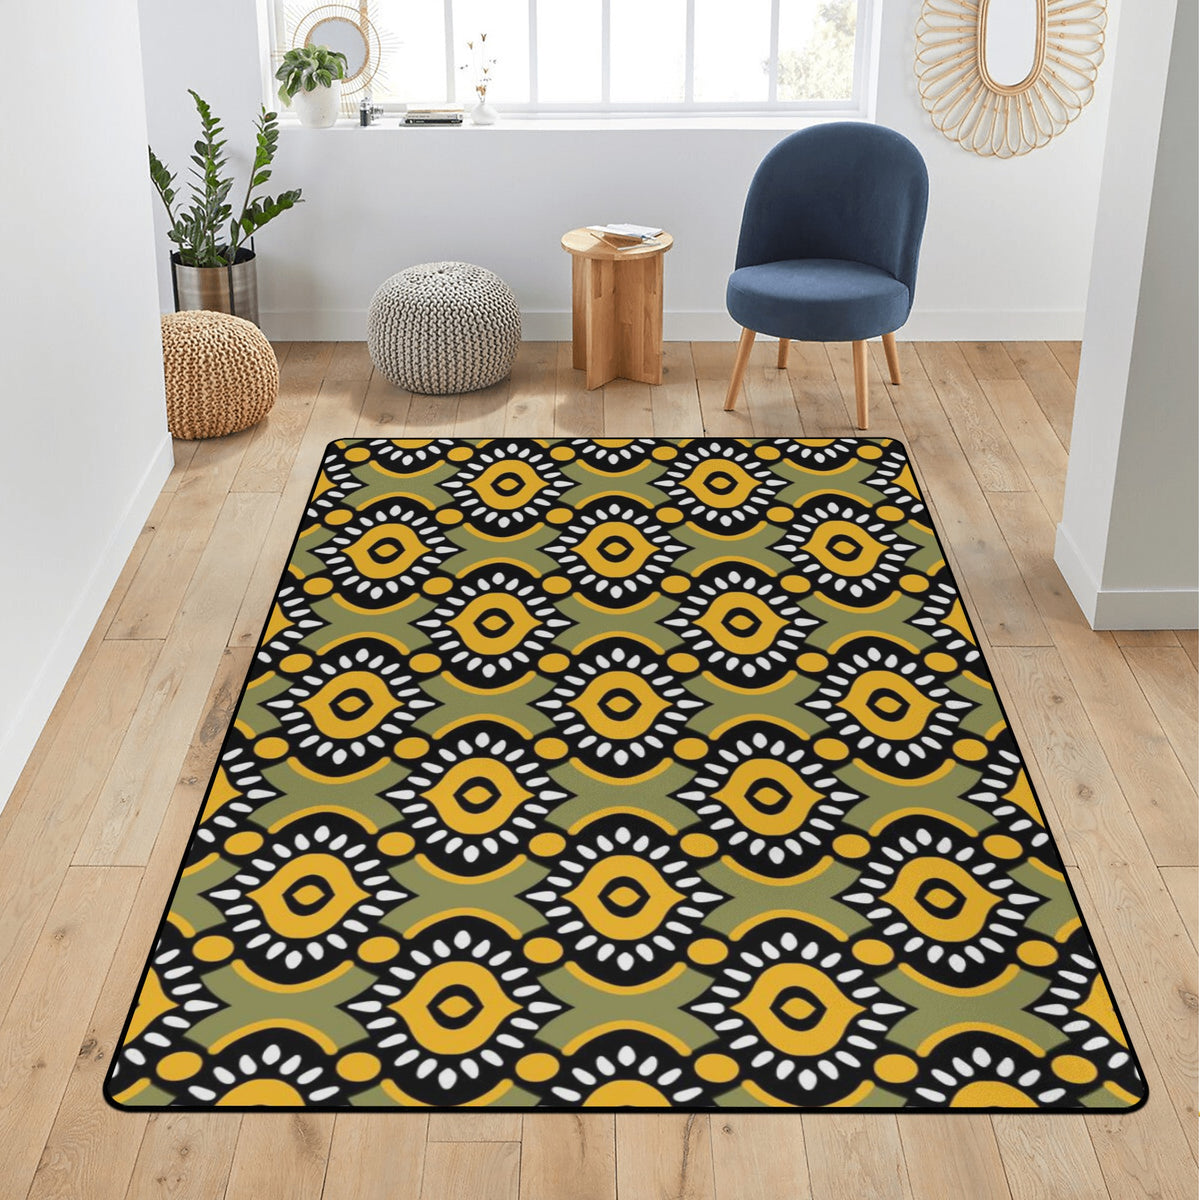 Living Room Carpet Rug in African Ankara Prints pop